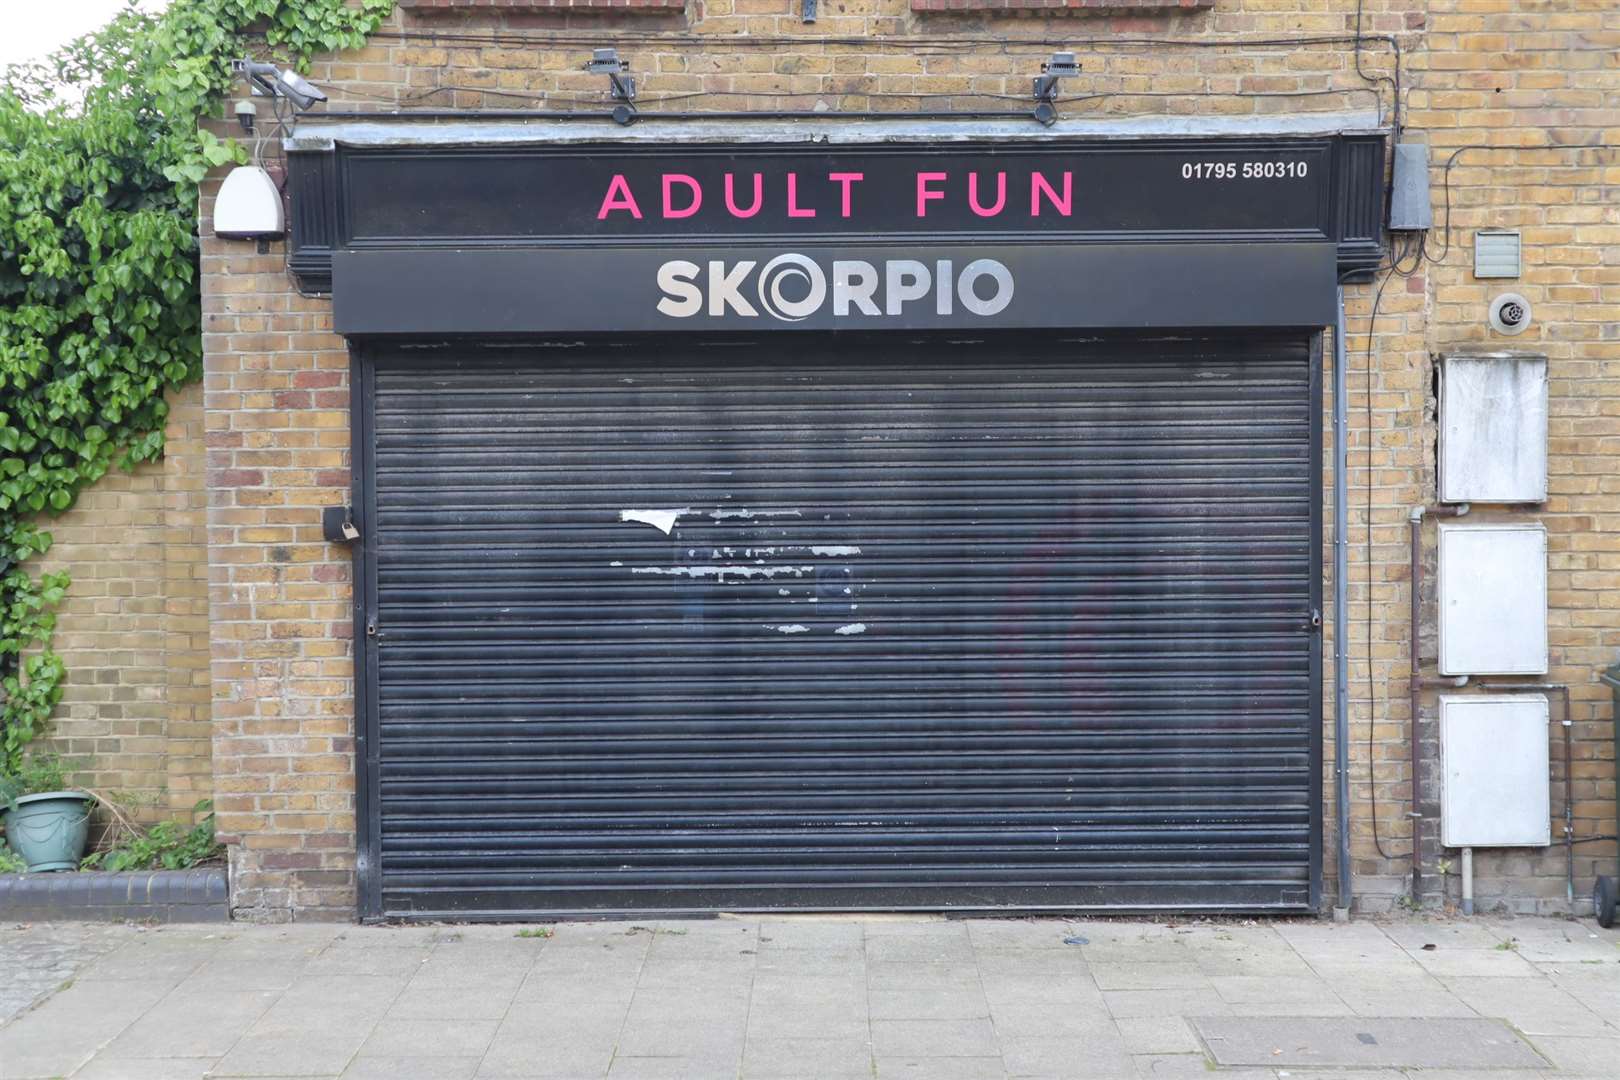 Skorpio adult sex shop at Blue Town, Sheppey. Picture: John Nurden